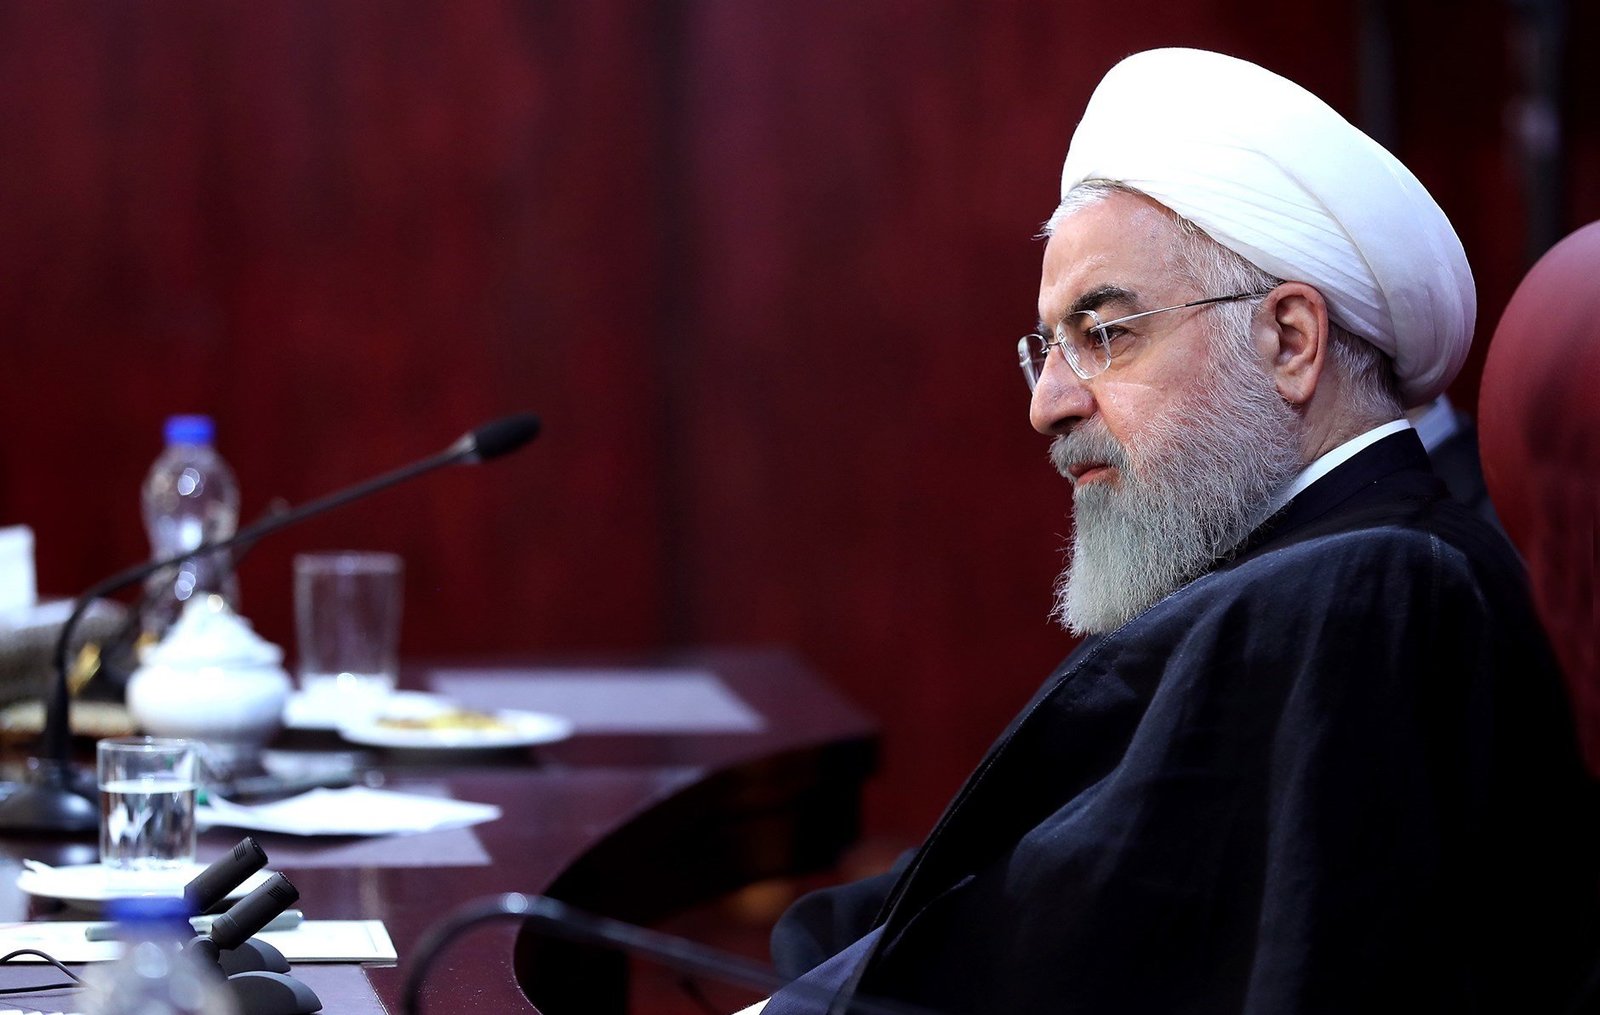 Advierte. El presidente iraní, Hasan Rohaní, denunció ayer que EU quiere un sistema de 'esclavitud' en Oriente Medio.